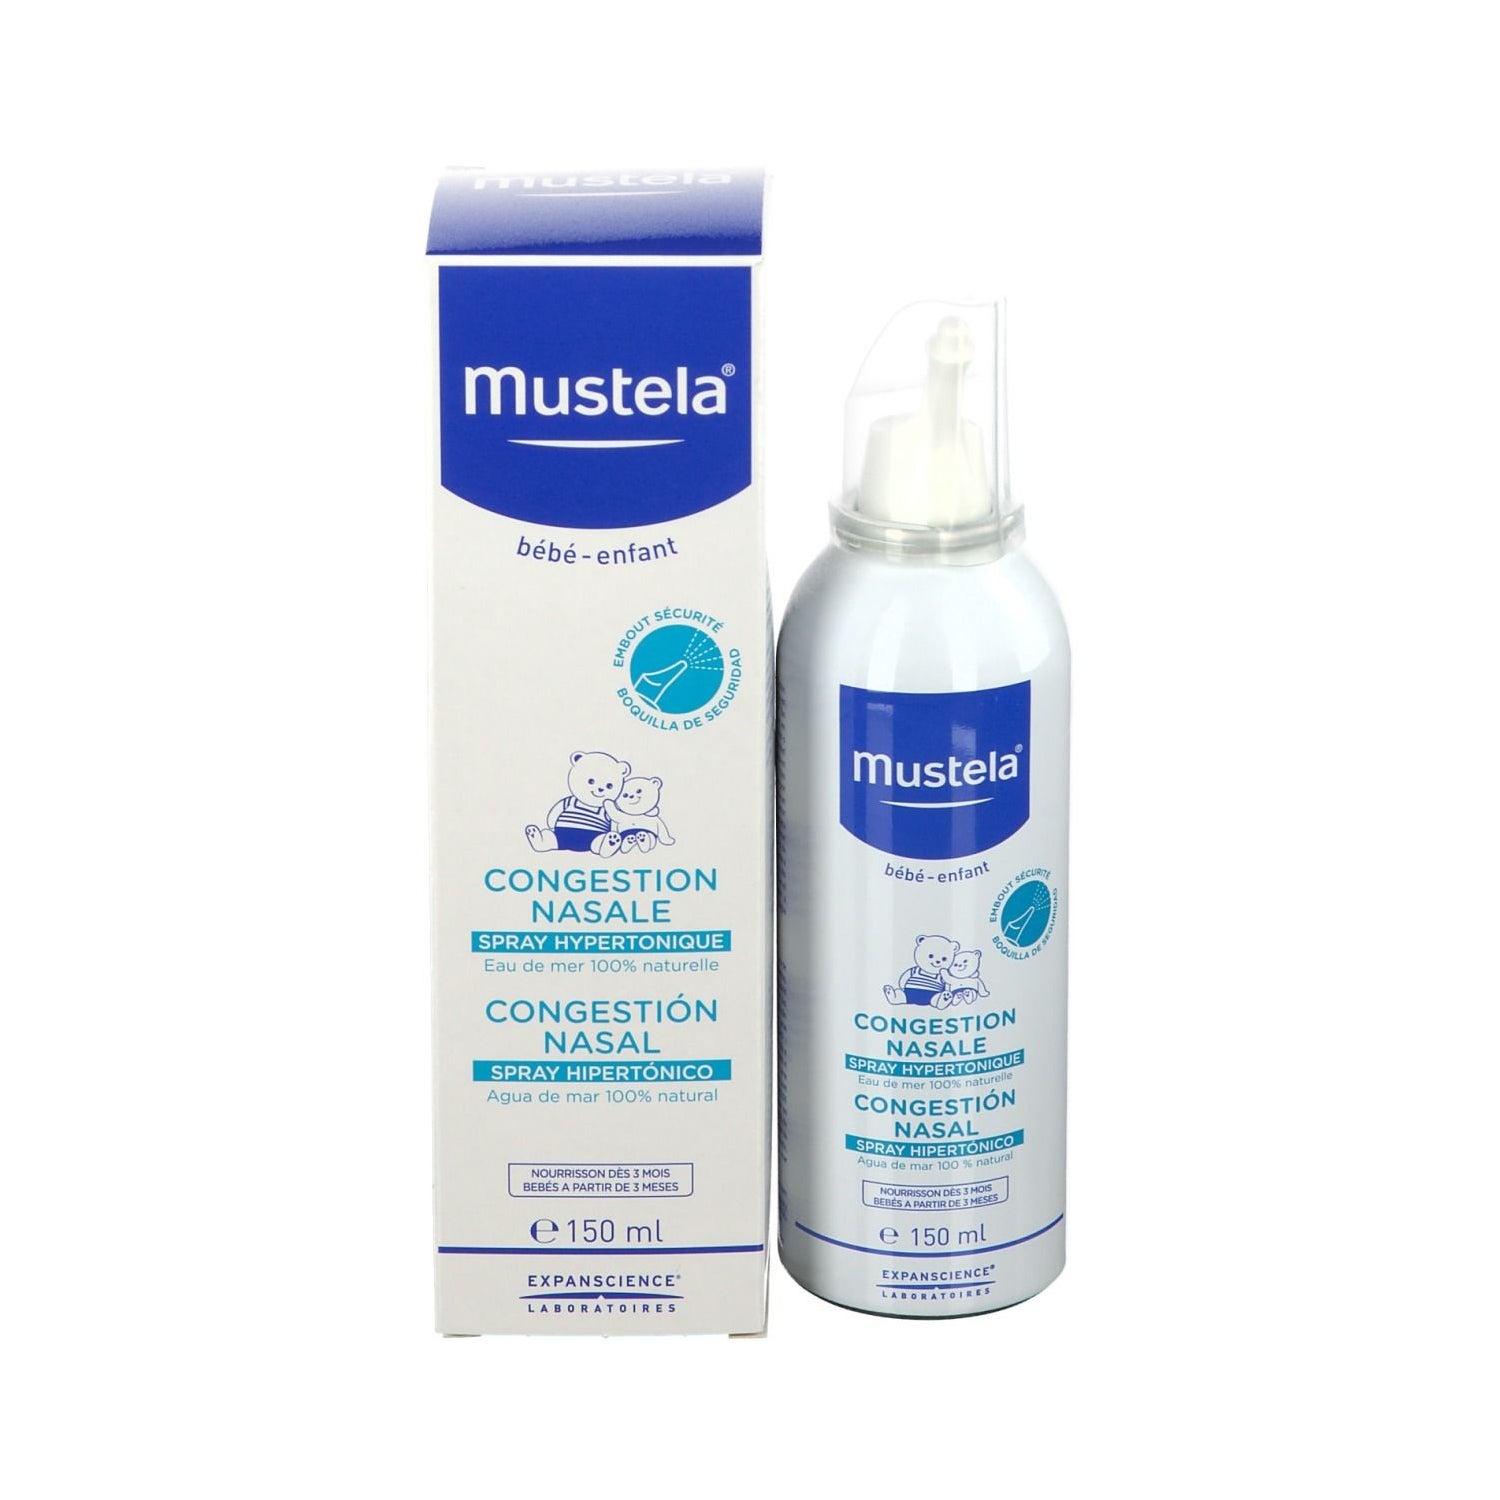 Mustela Spray Higiene Nasal